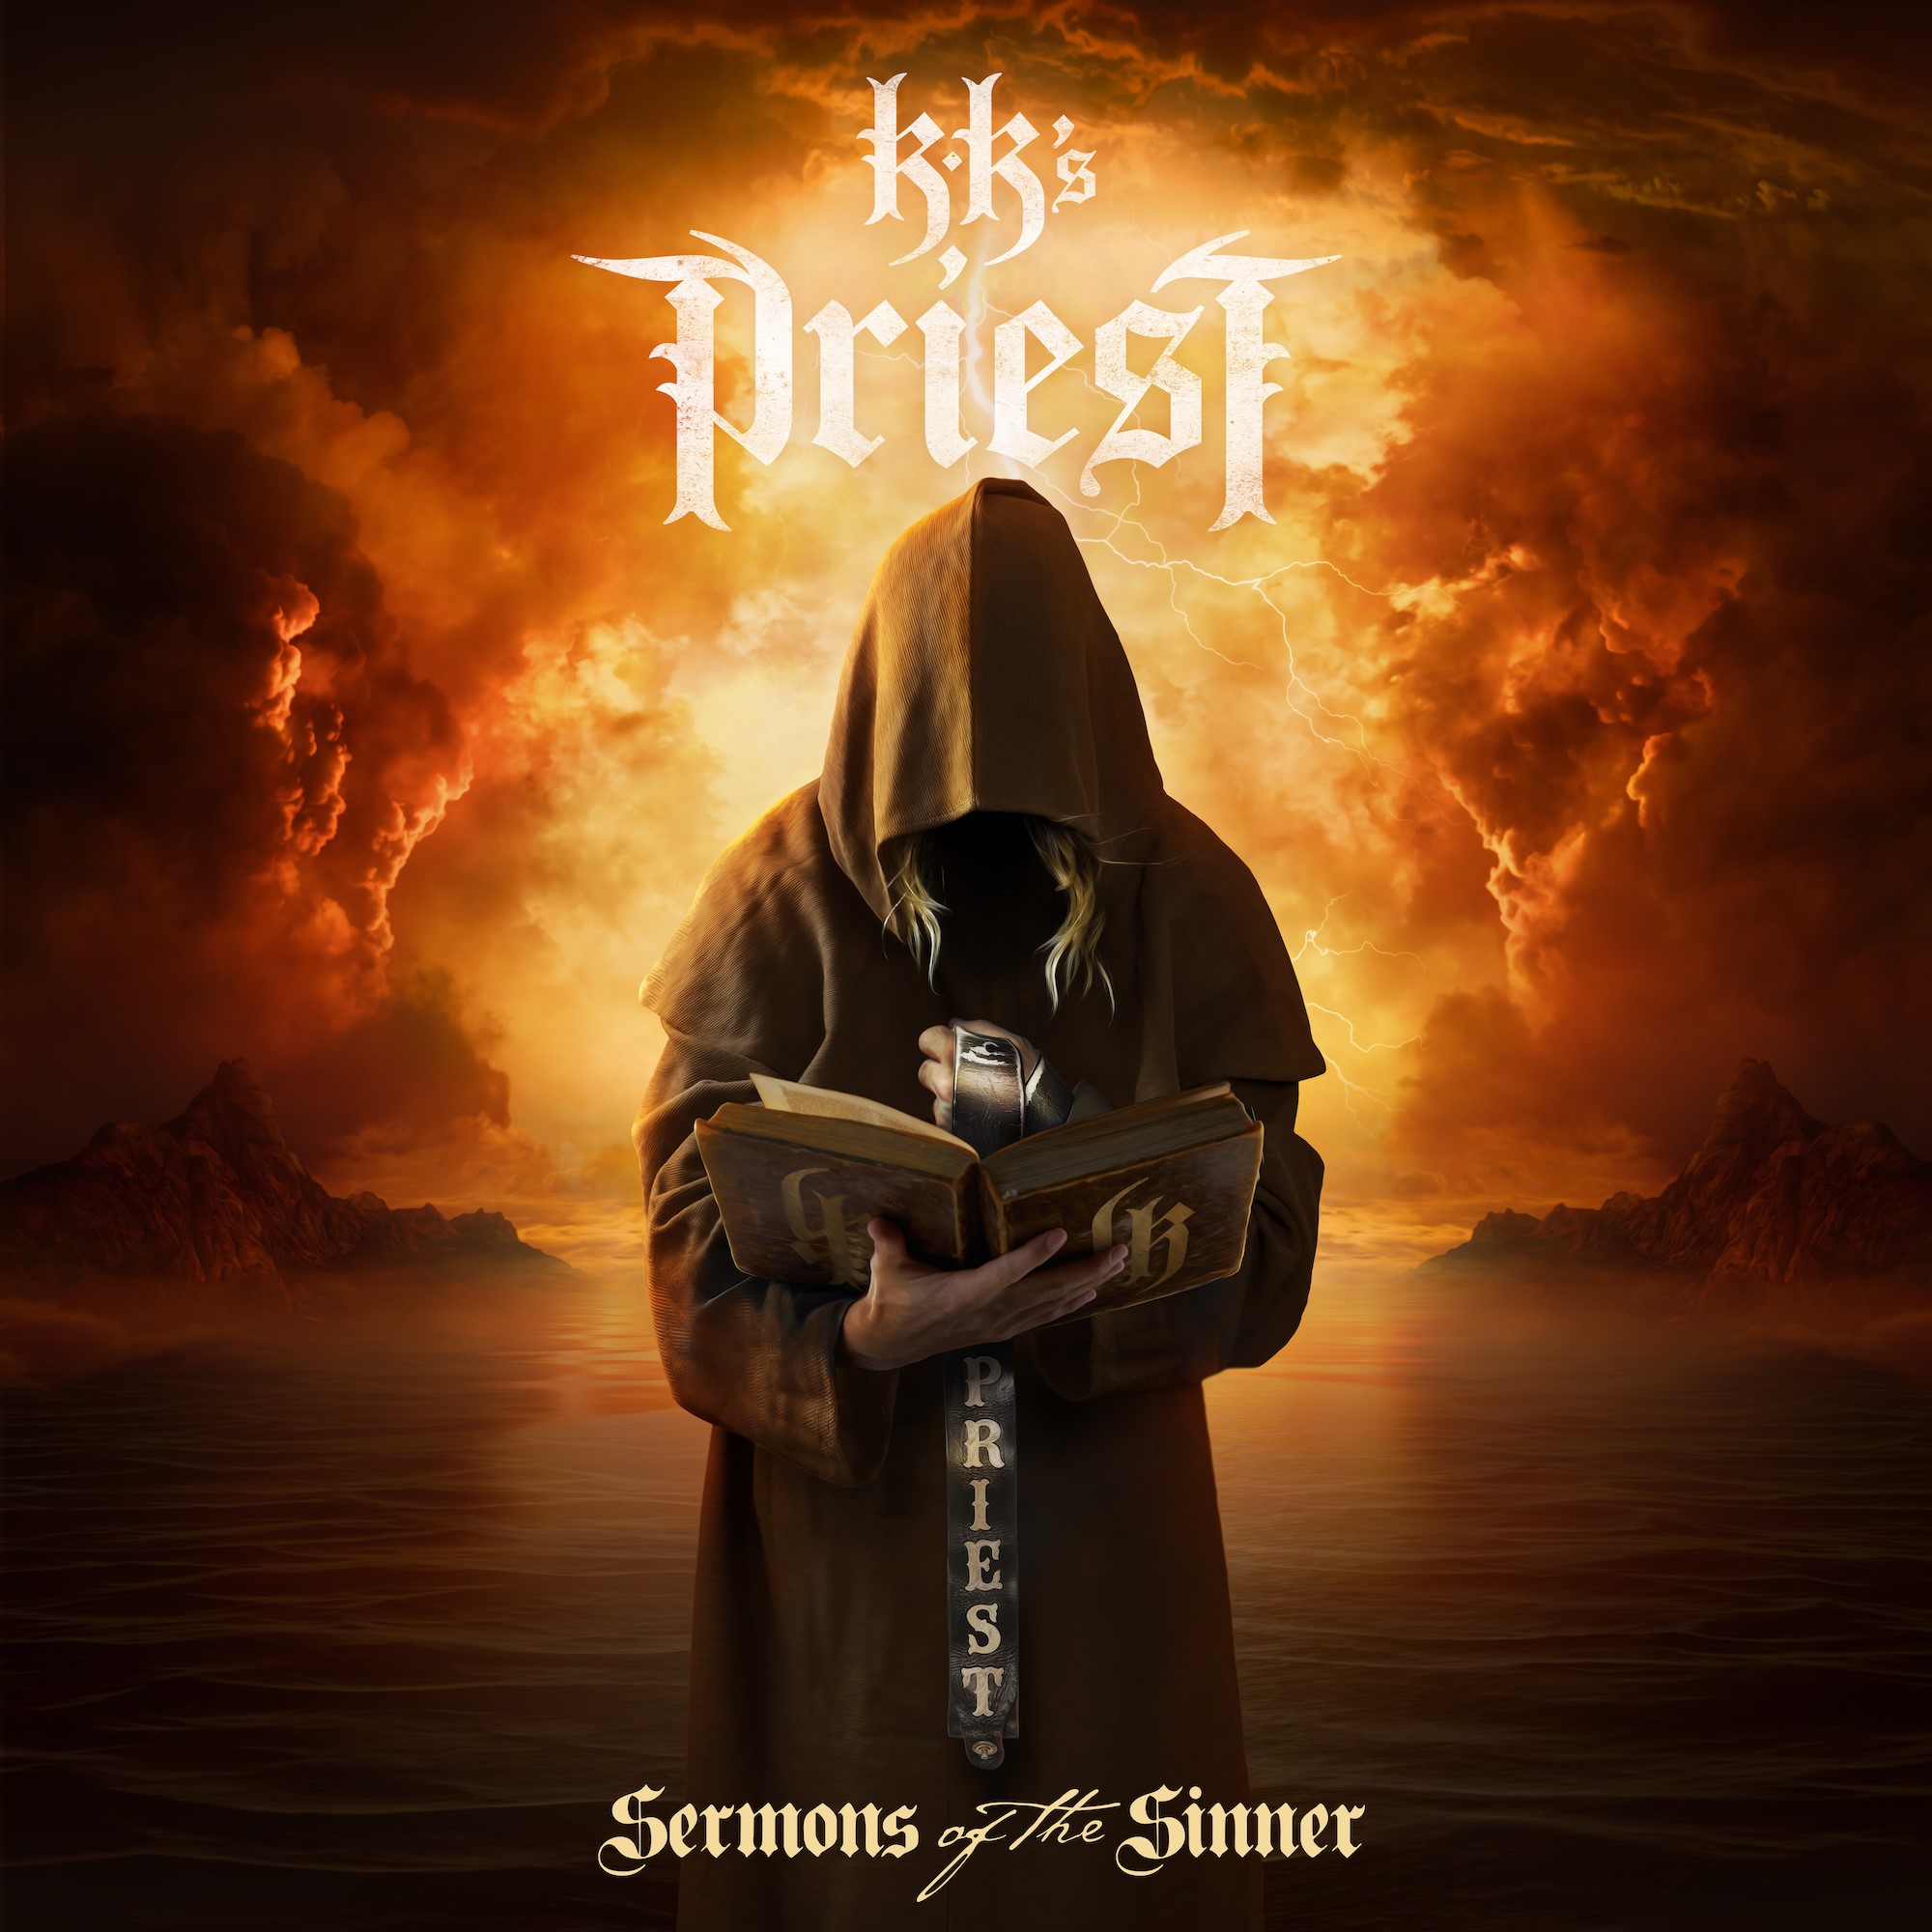 KK's PRIEST announces "Sermons of the Sinner"